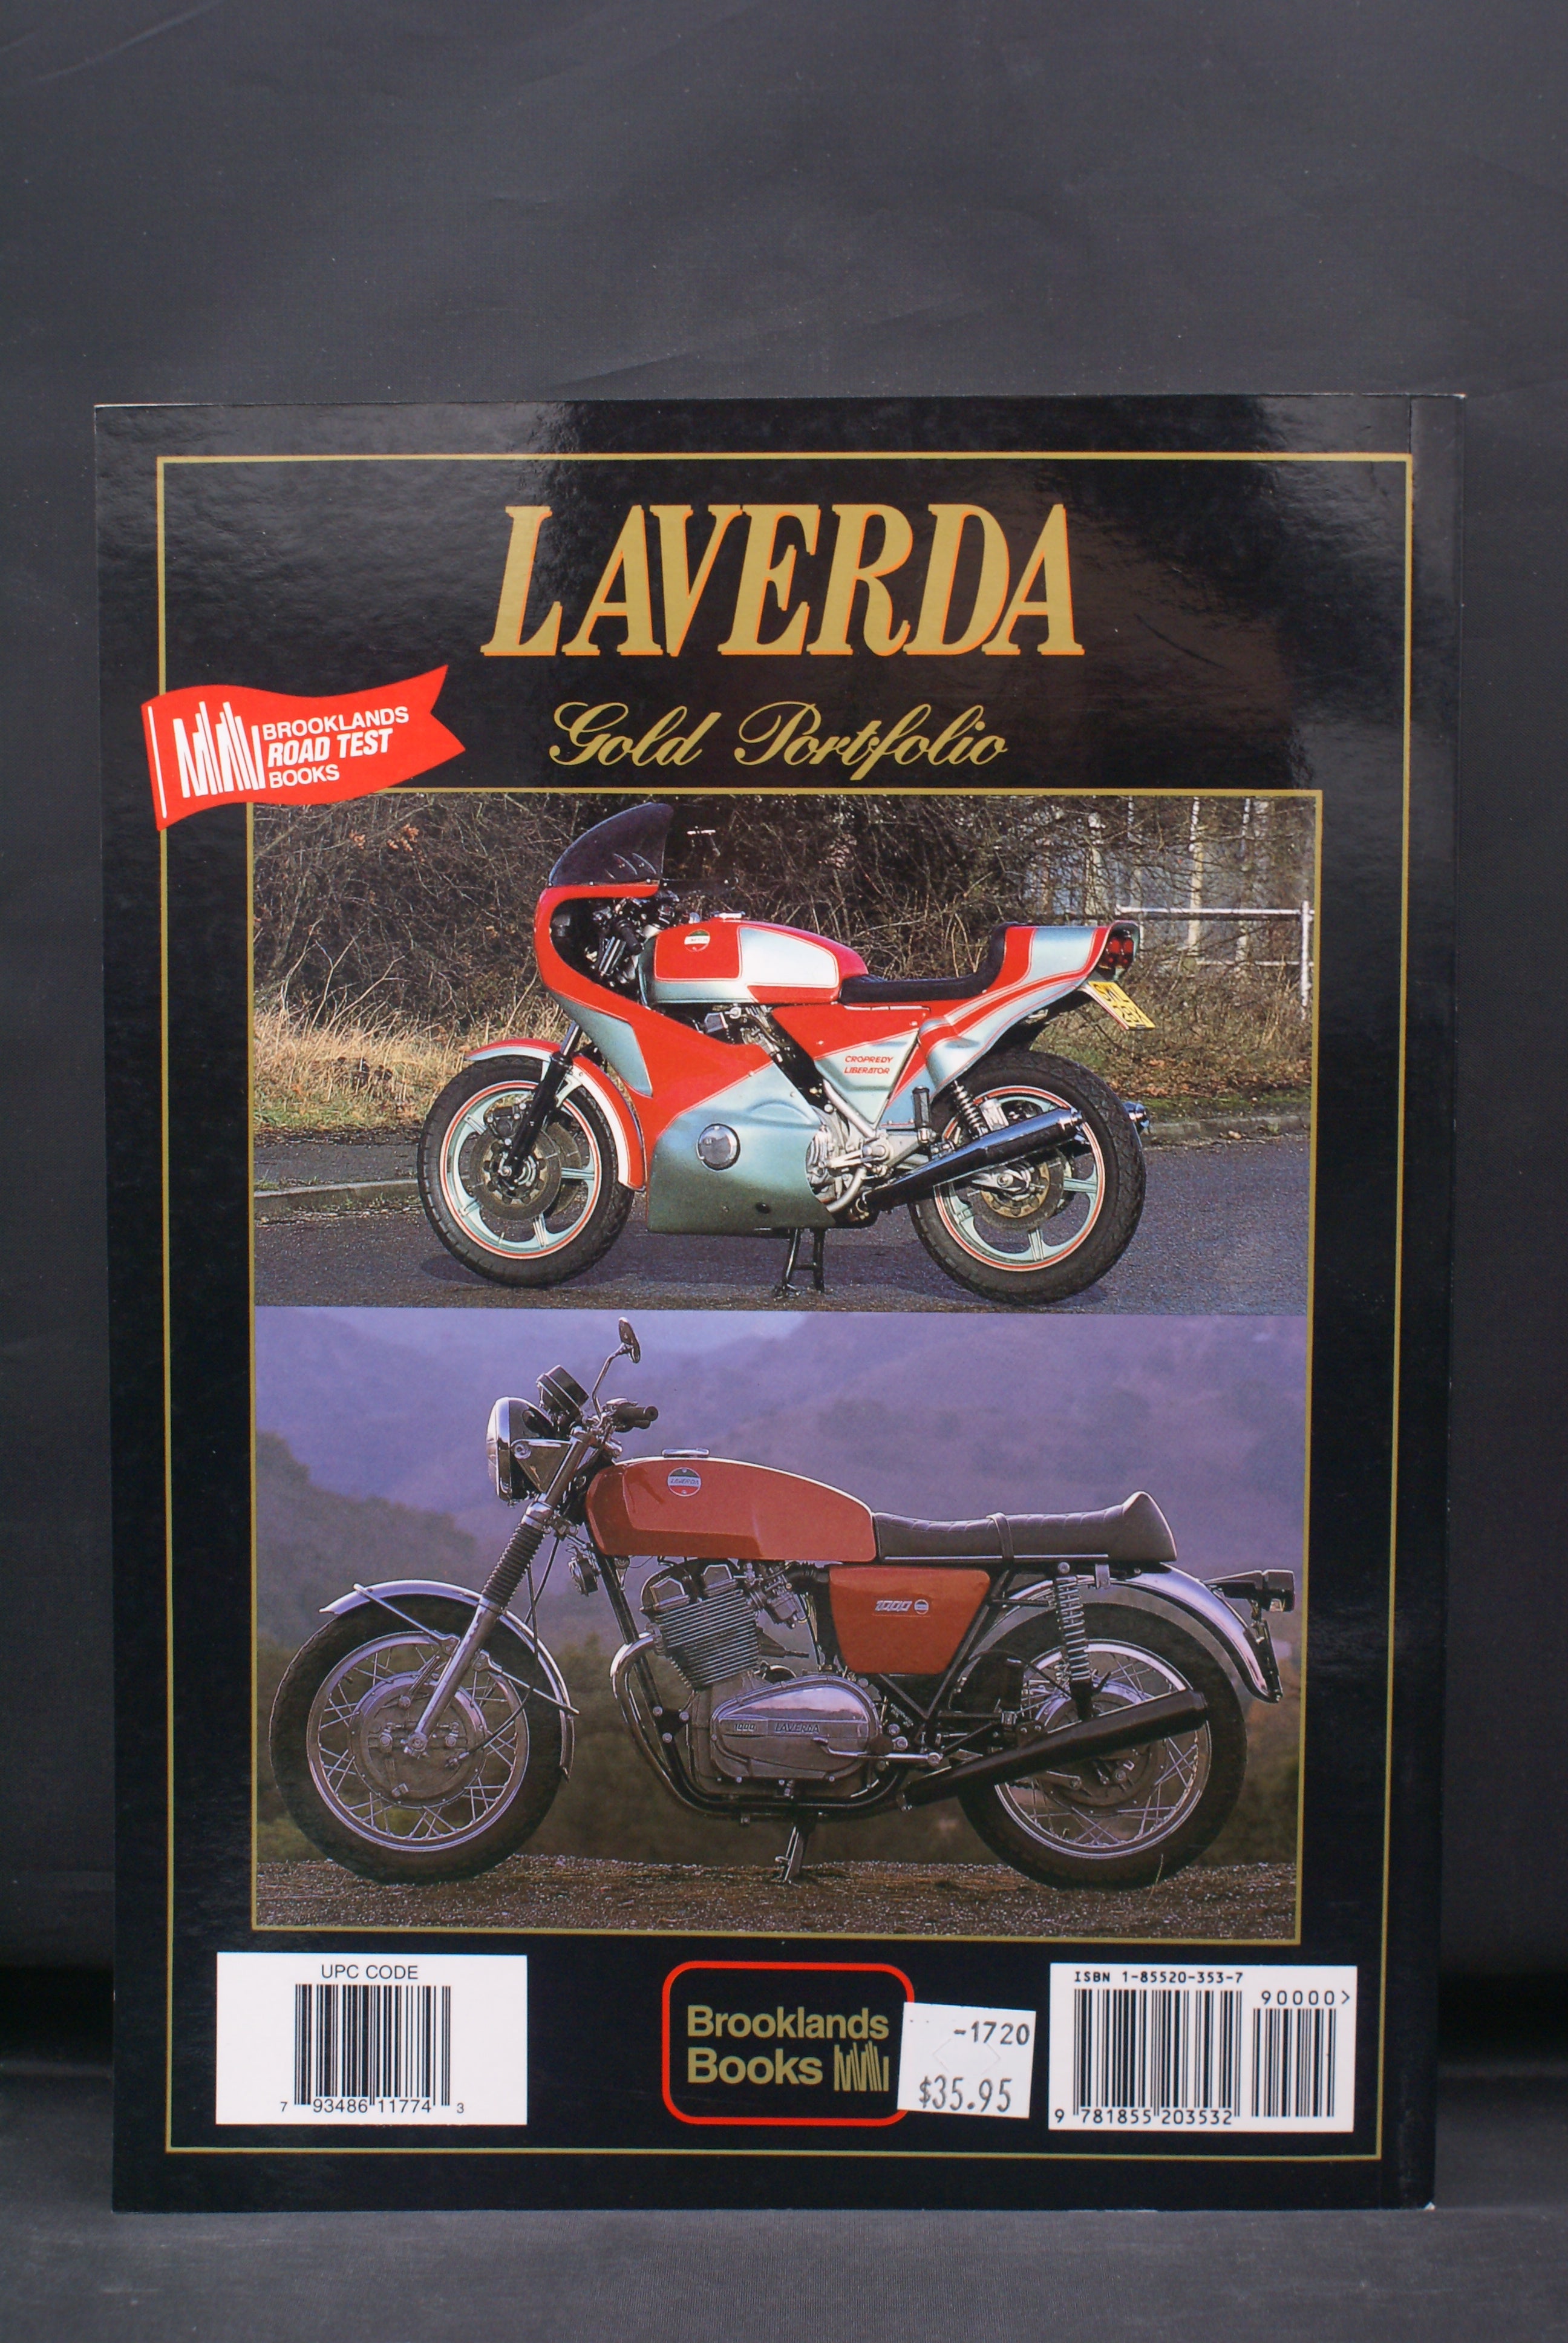 Laverda 1967-1977